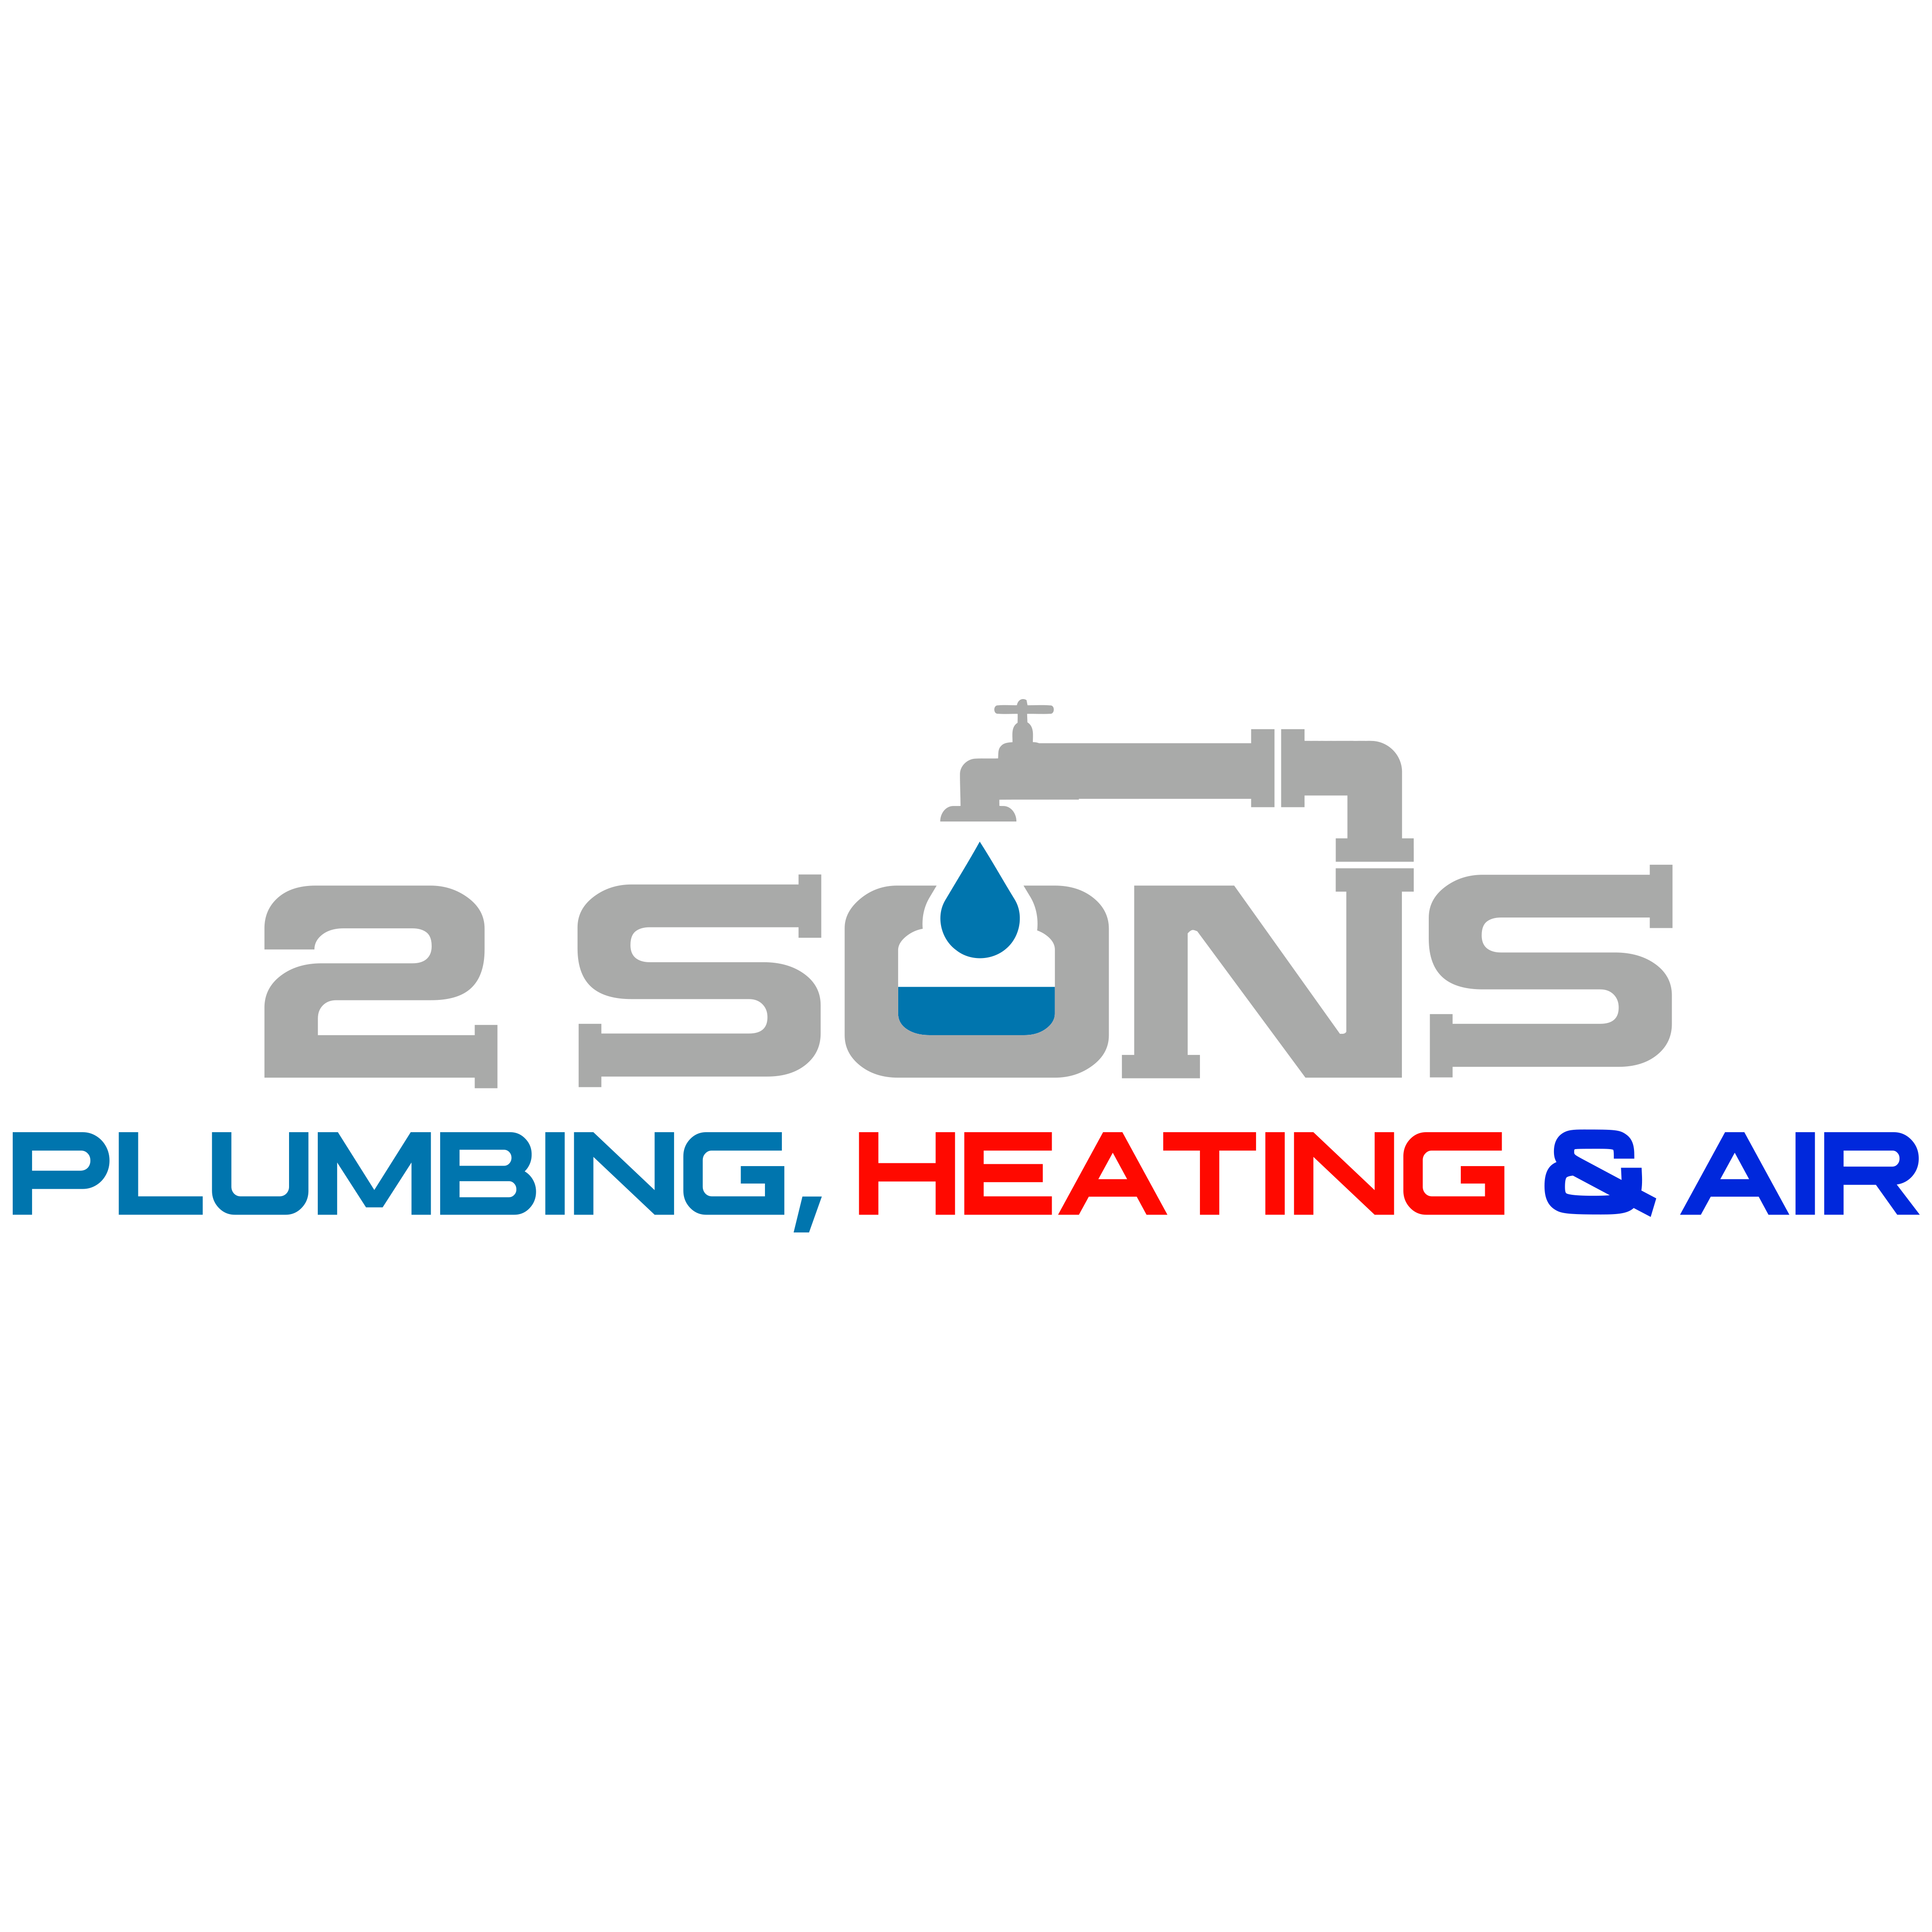 2 Sons Plumbing, Heating, & Air